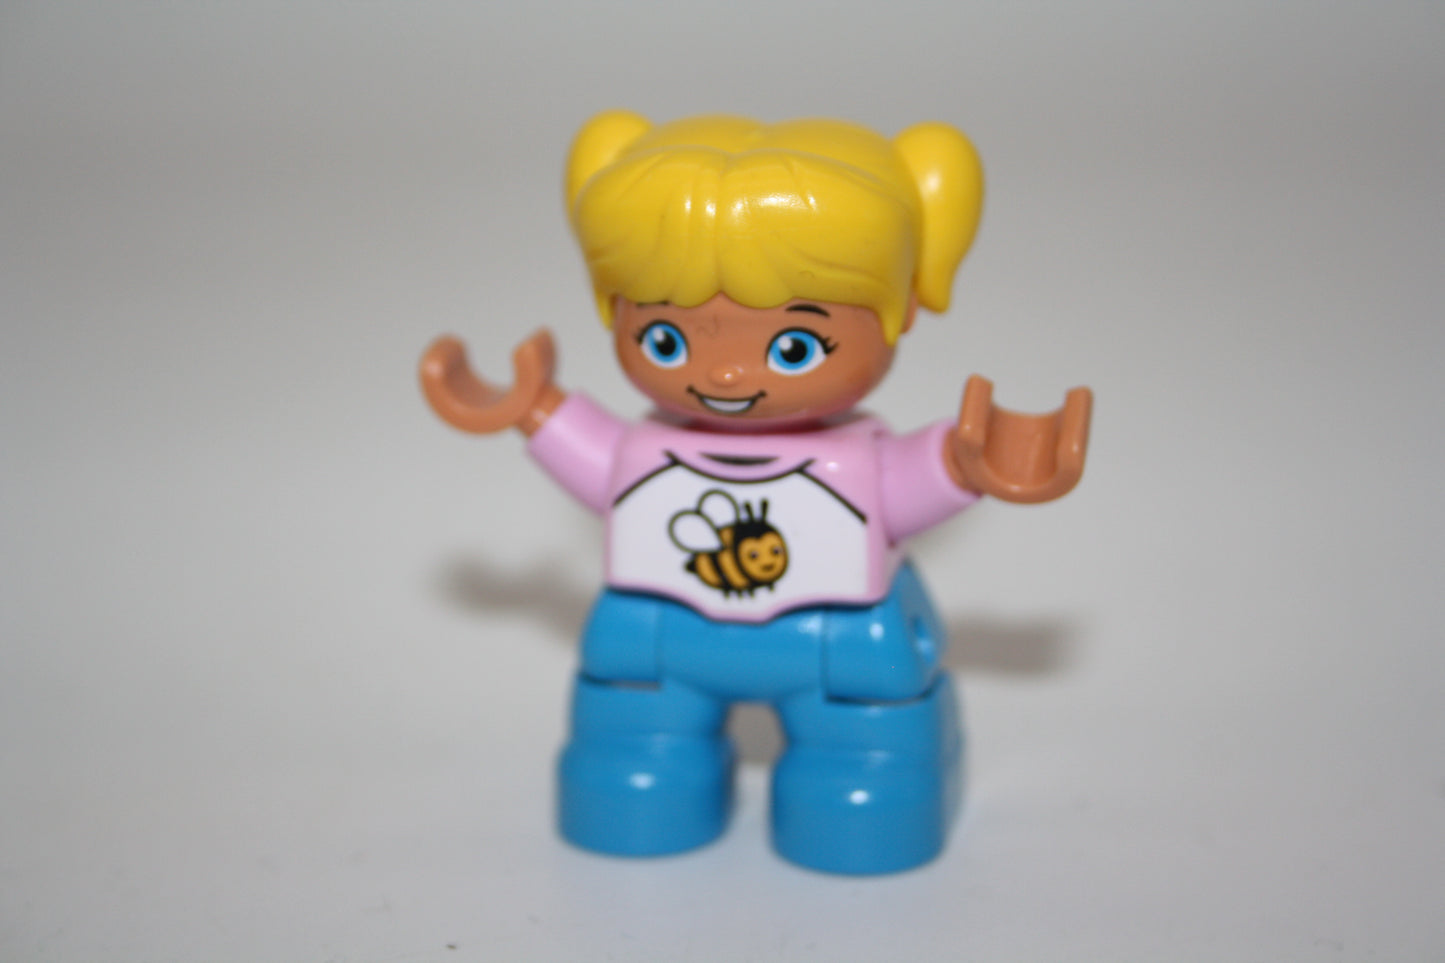 Duplo - Mädchen - blonde Haare - hellblaue Hose/weißer-rosa Pulli mit Biene - Figur